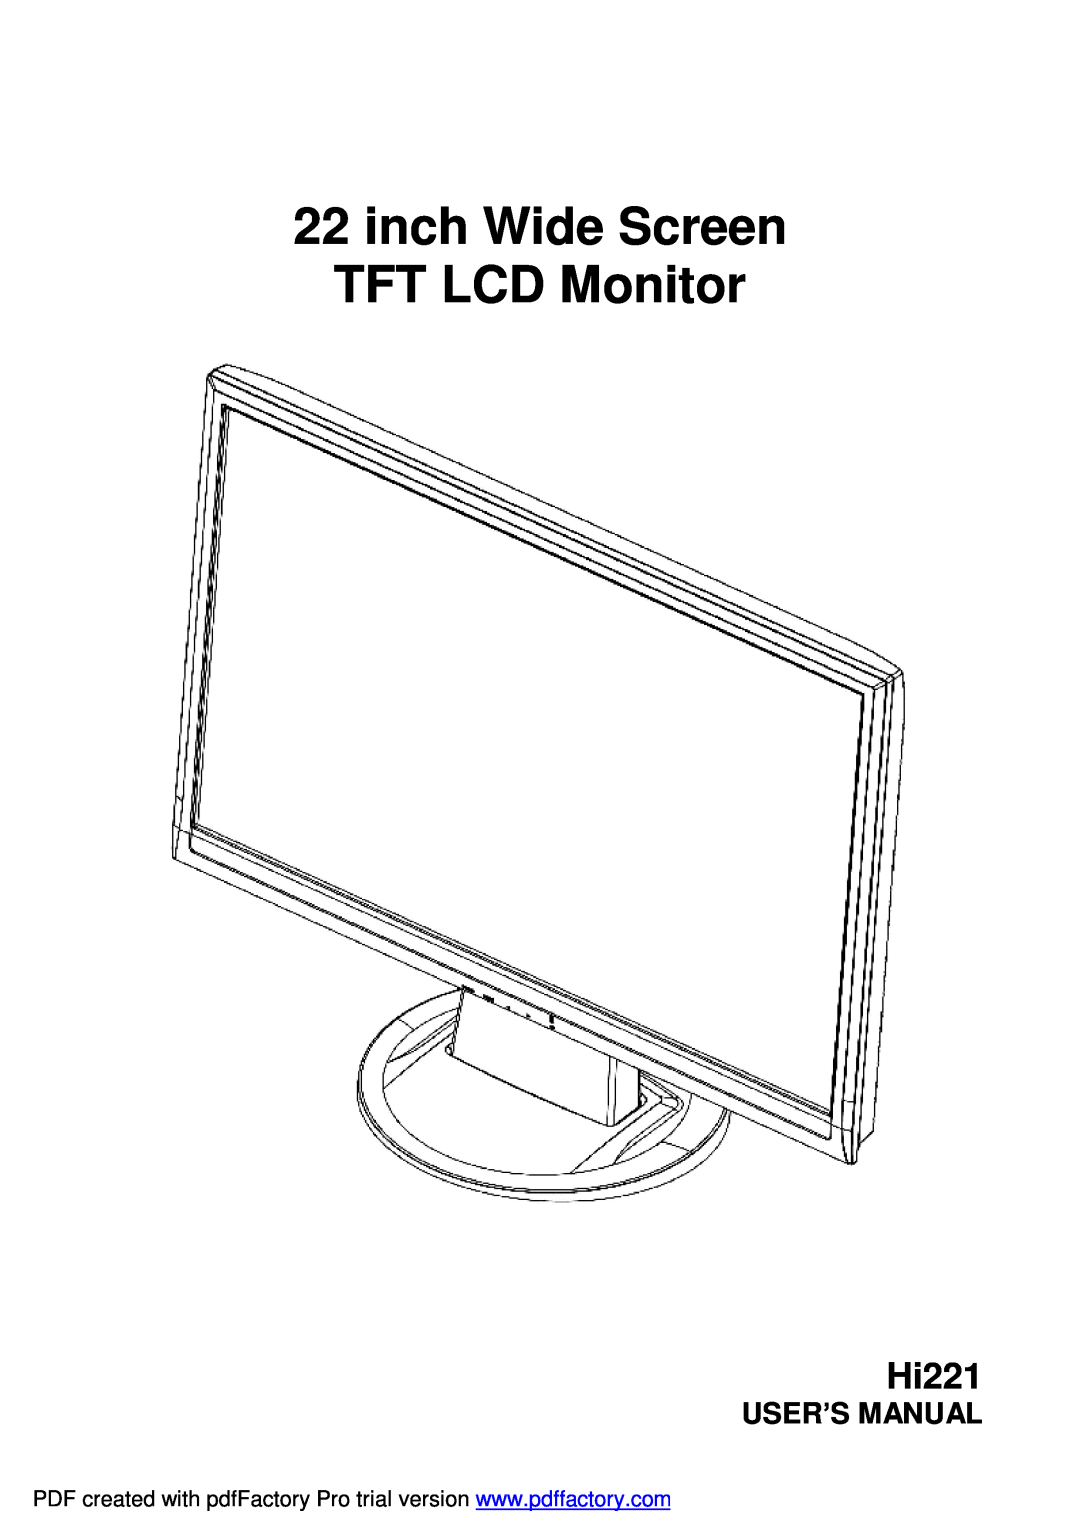 Hanns.G HI221 user manual User’S Manual, inch Wide Screen TFT LCD Monitor, Hi221 